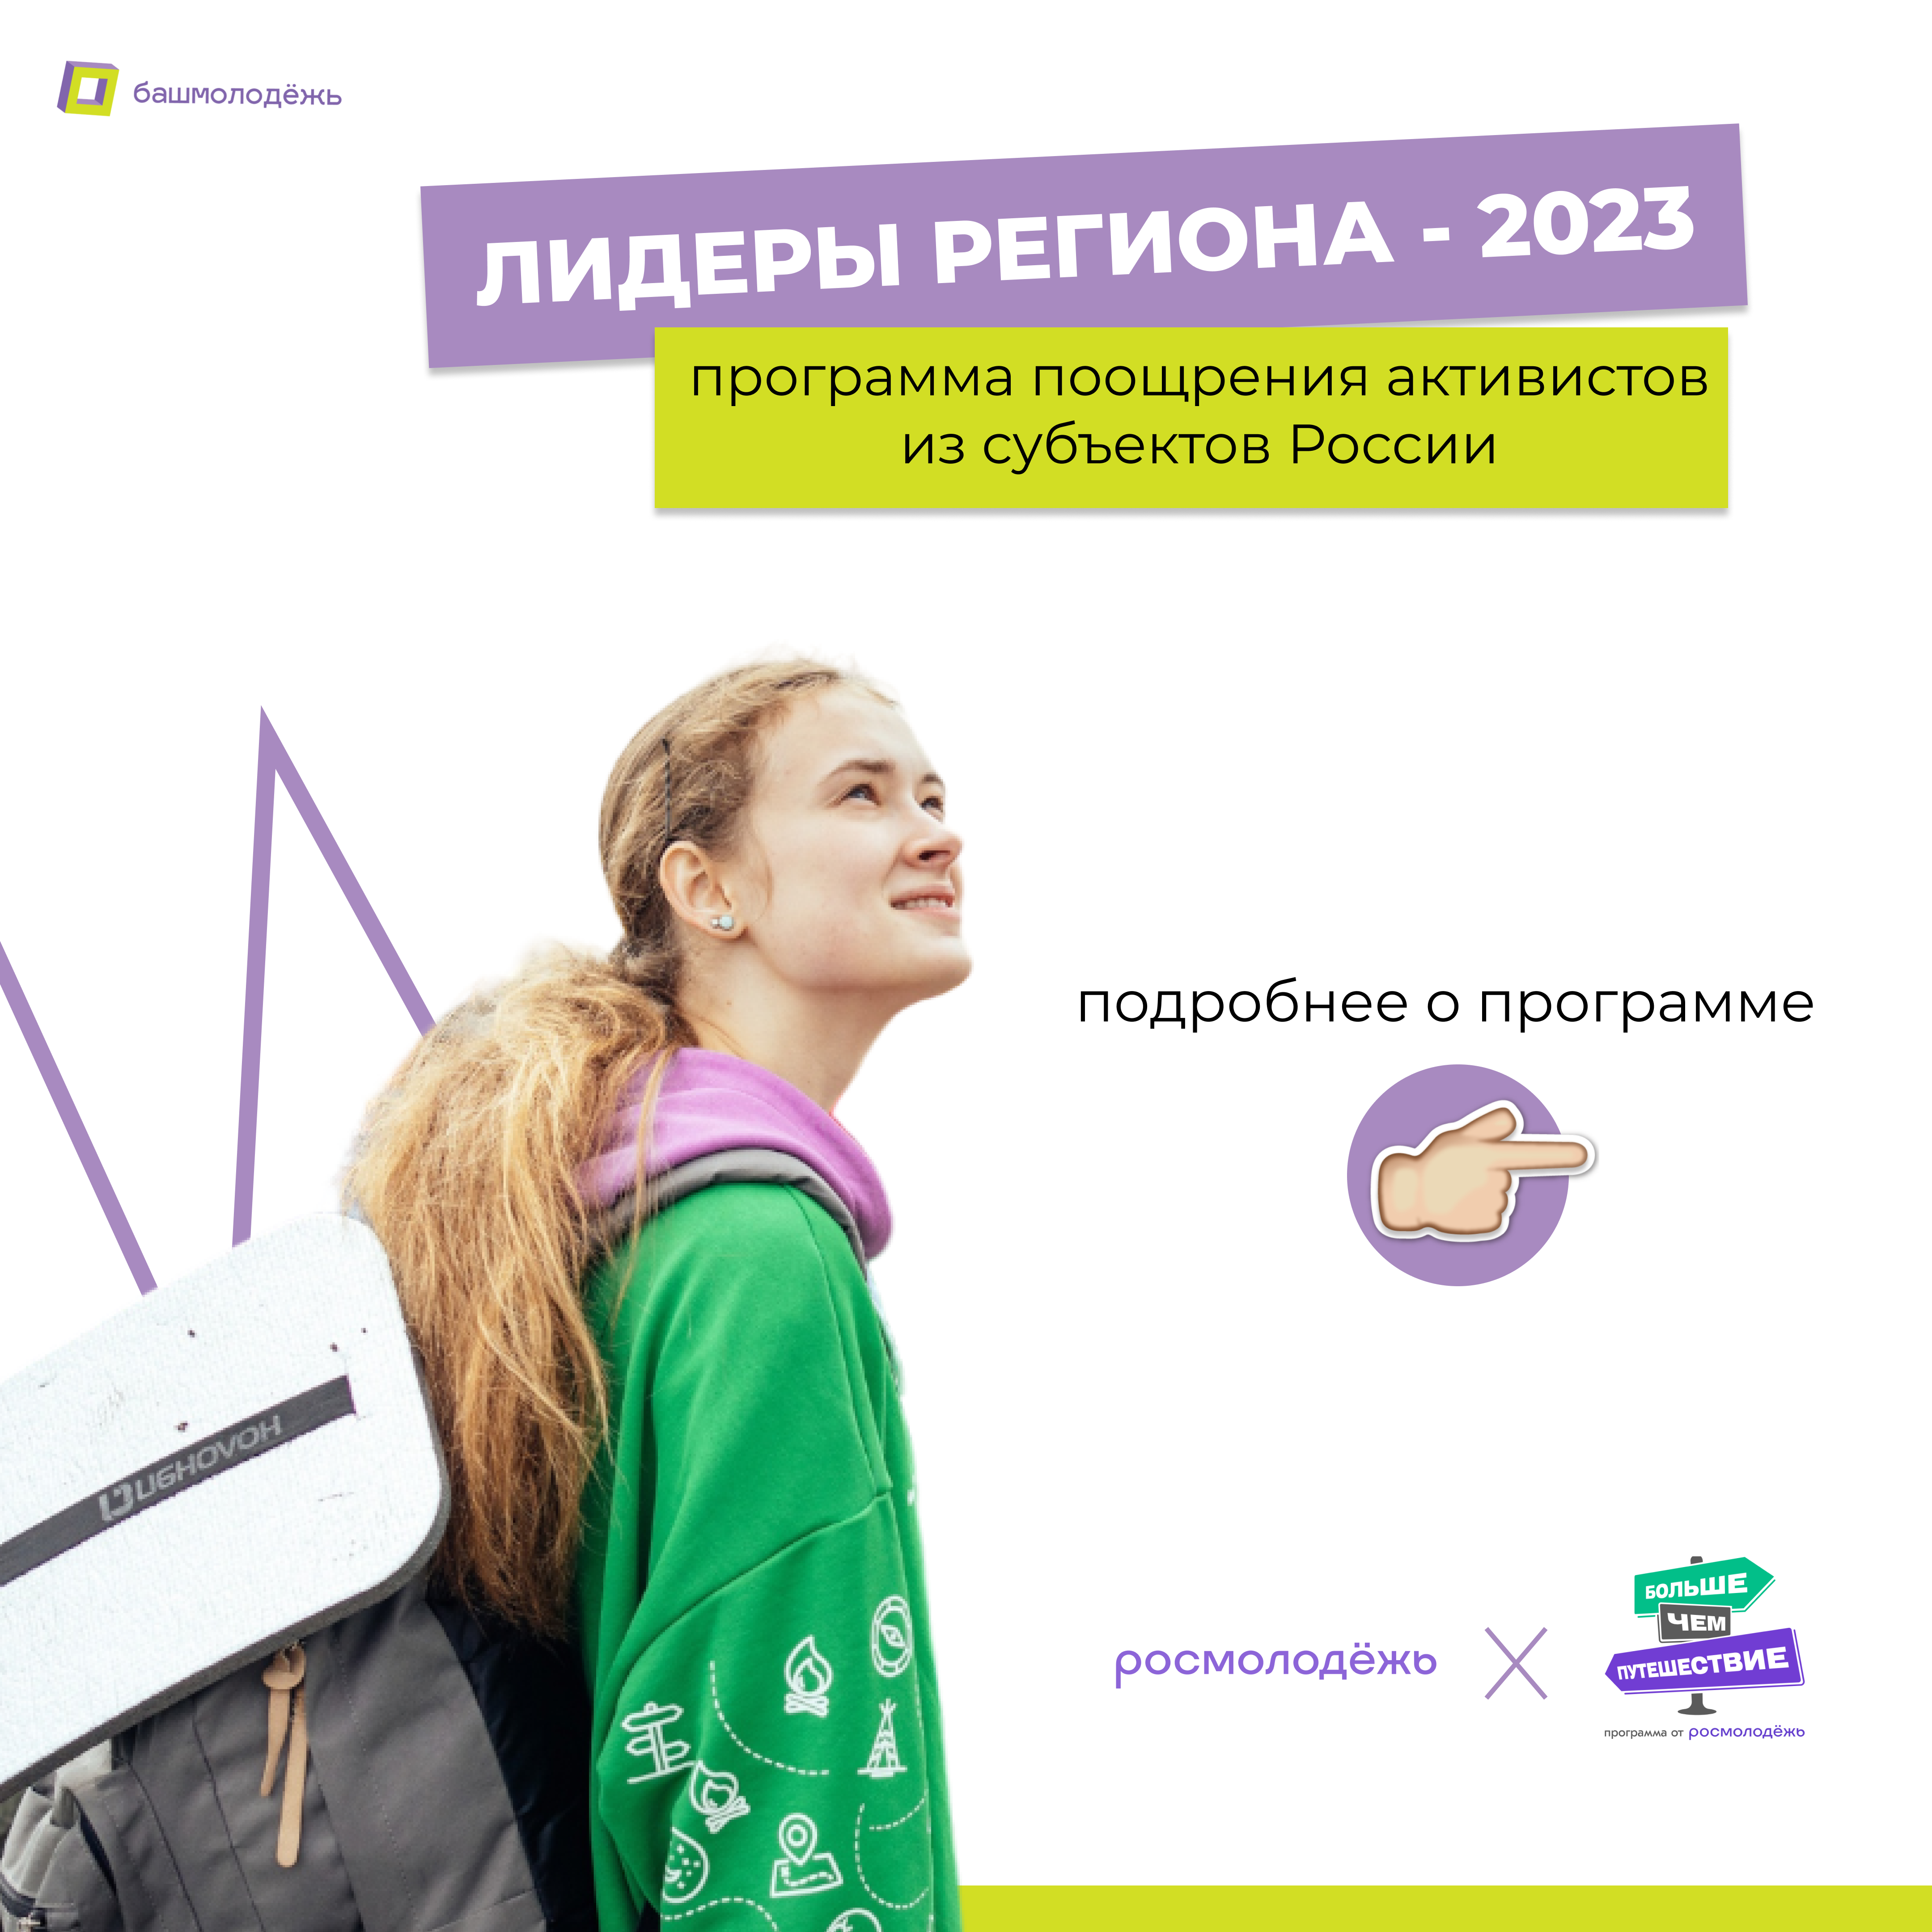 Молодежь Республики Башкортостан сможет принять участие в федеральной программе «Лидеры региона - 2023»